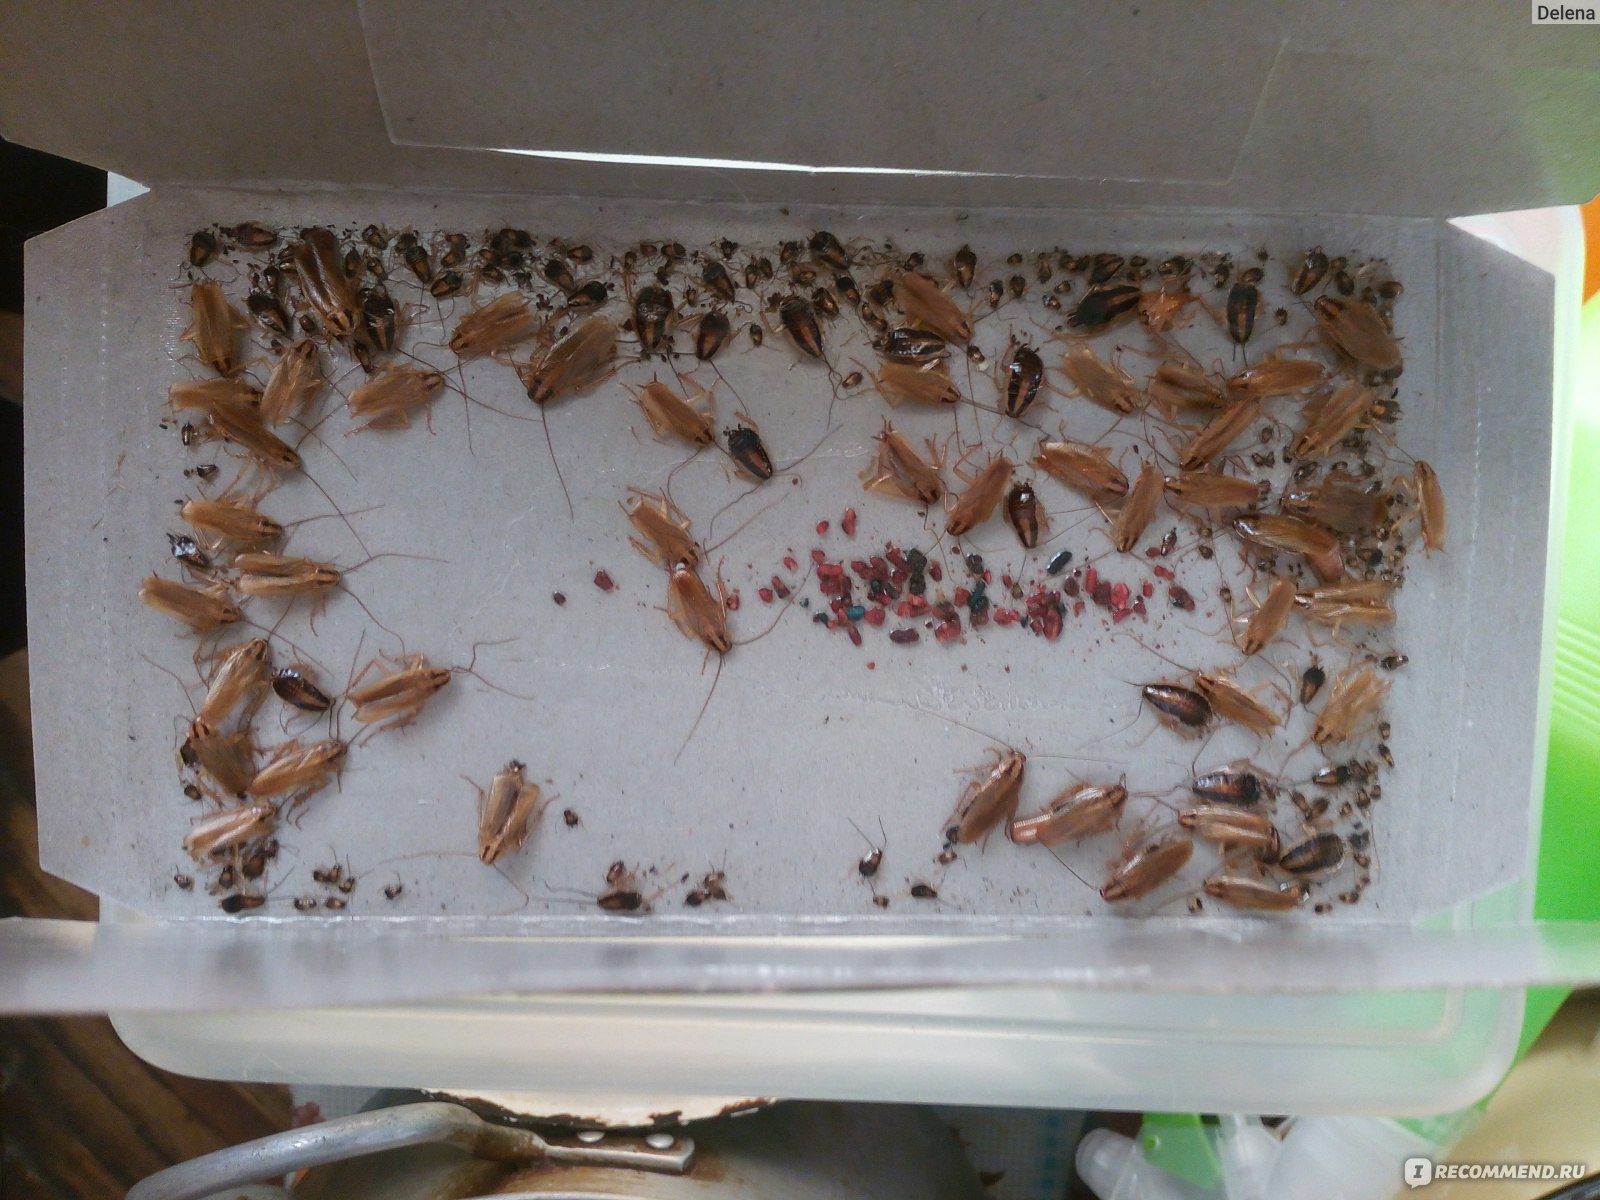 Фото маленьких тараканов домашних только вылупившихся